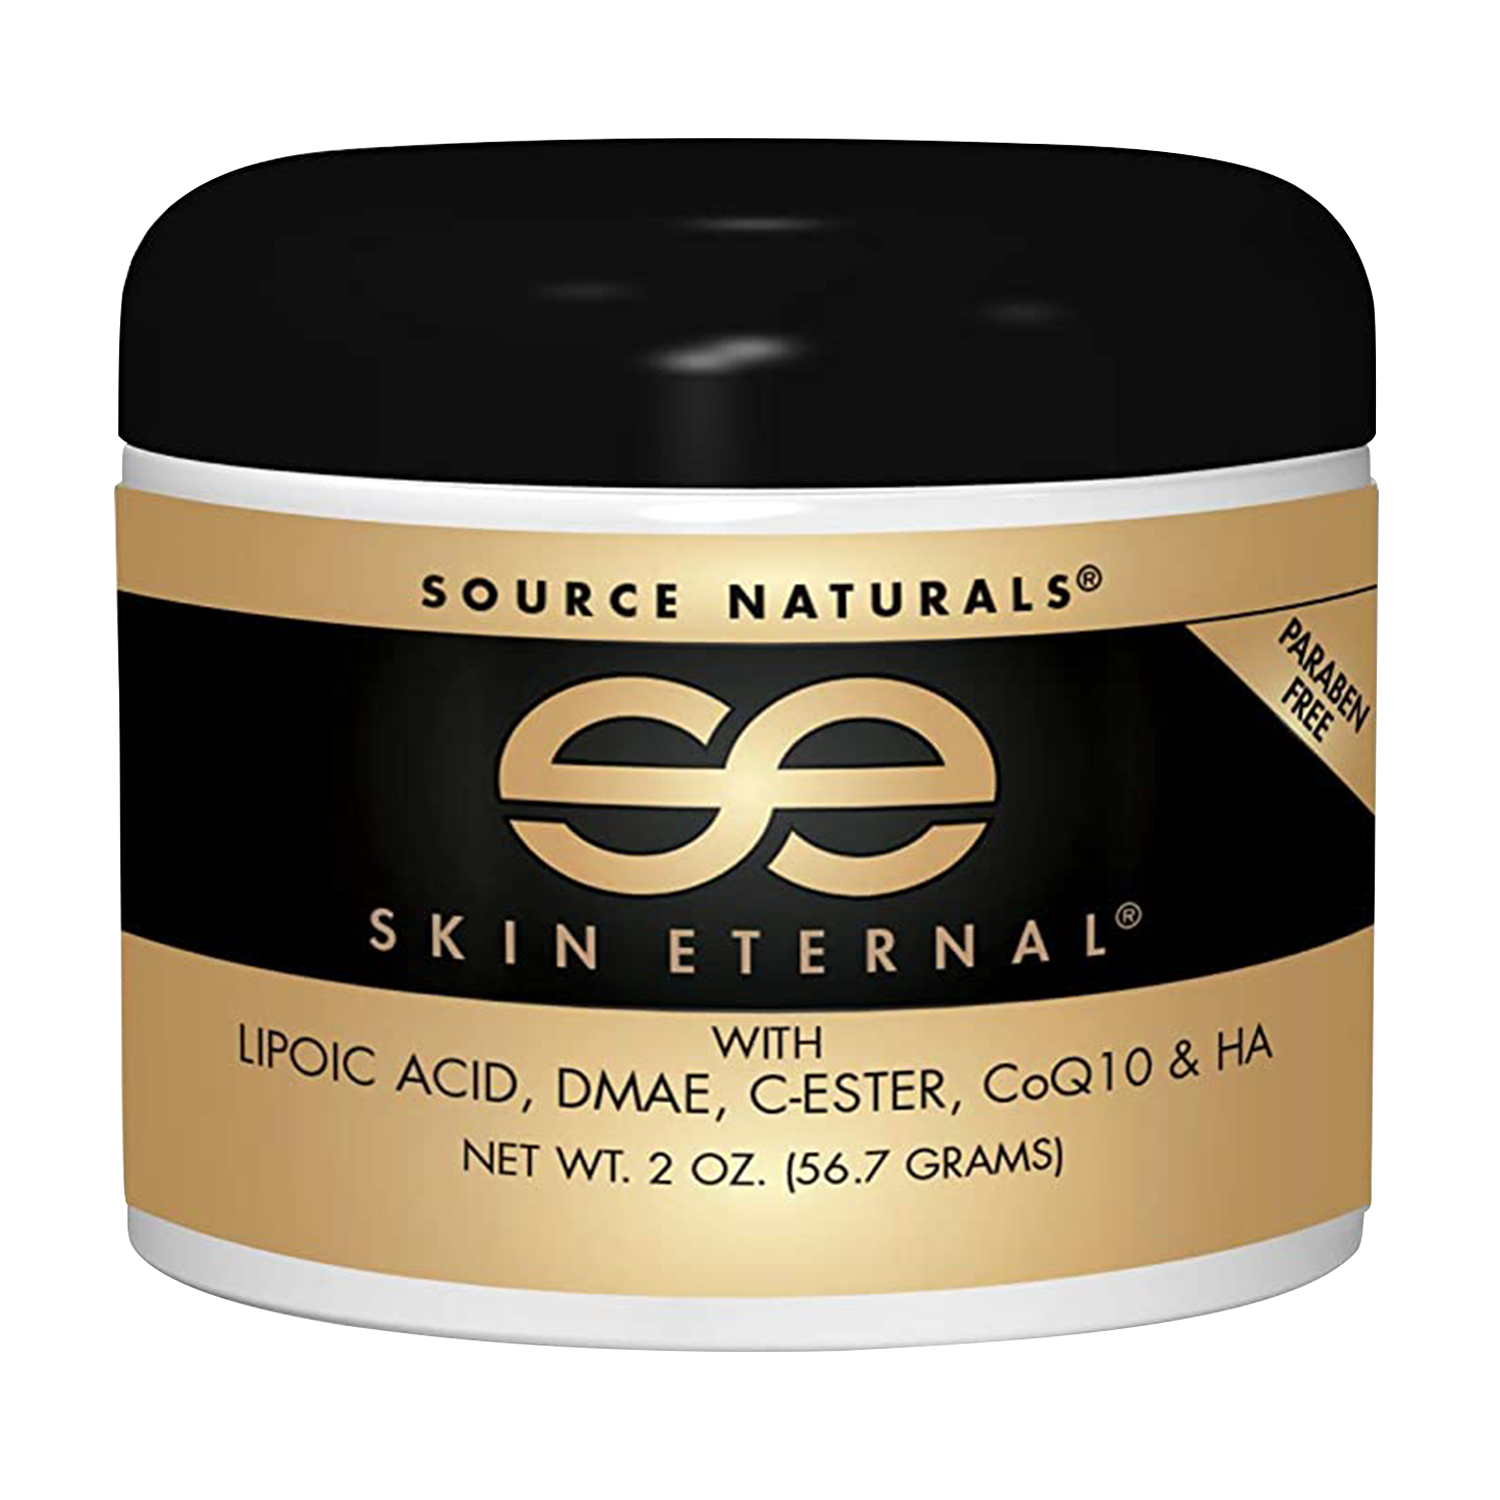 Source Naturals Skin Eternal Cream, 2 Oz